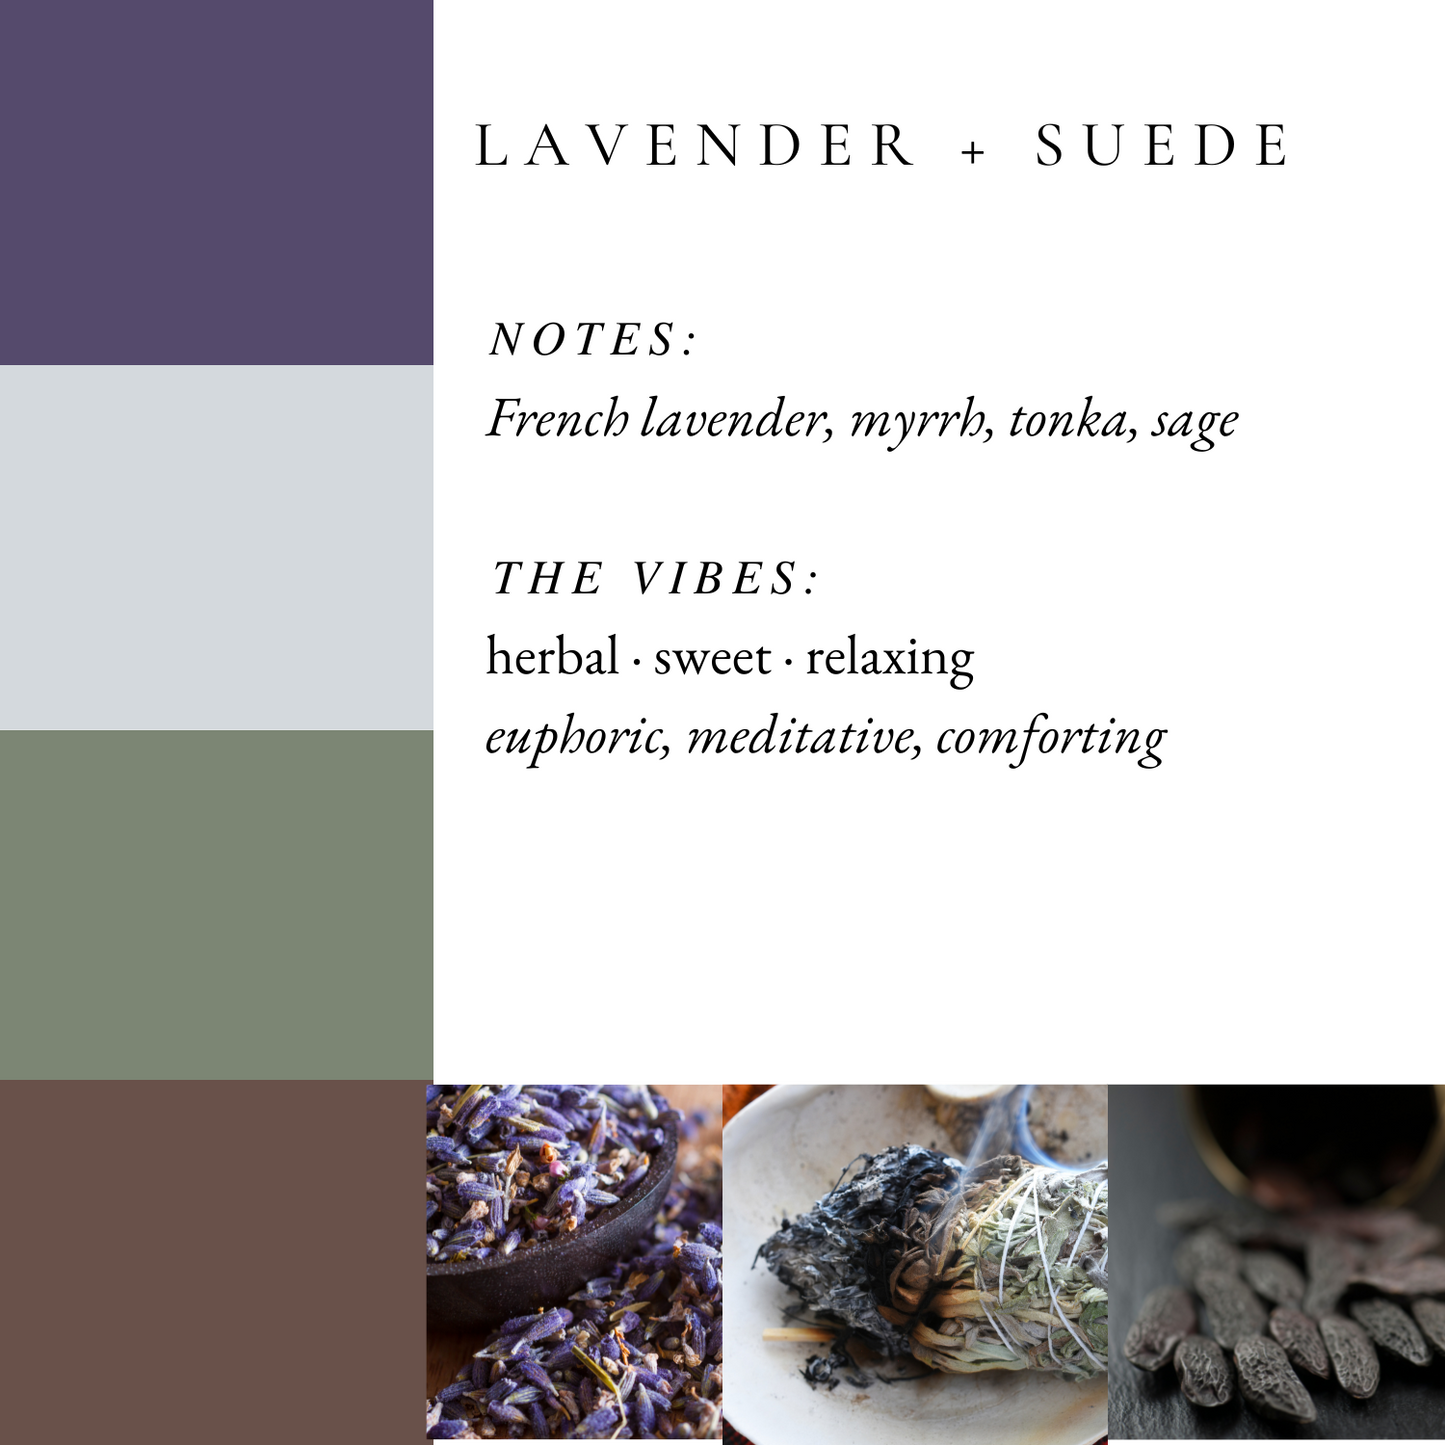 Lavender +Suede